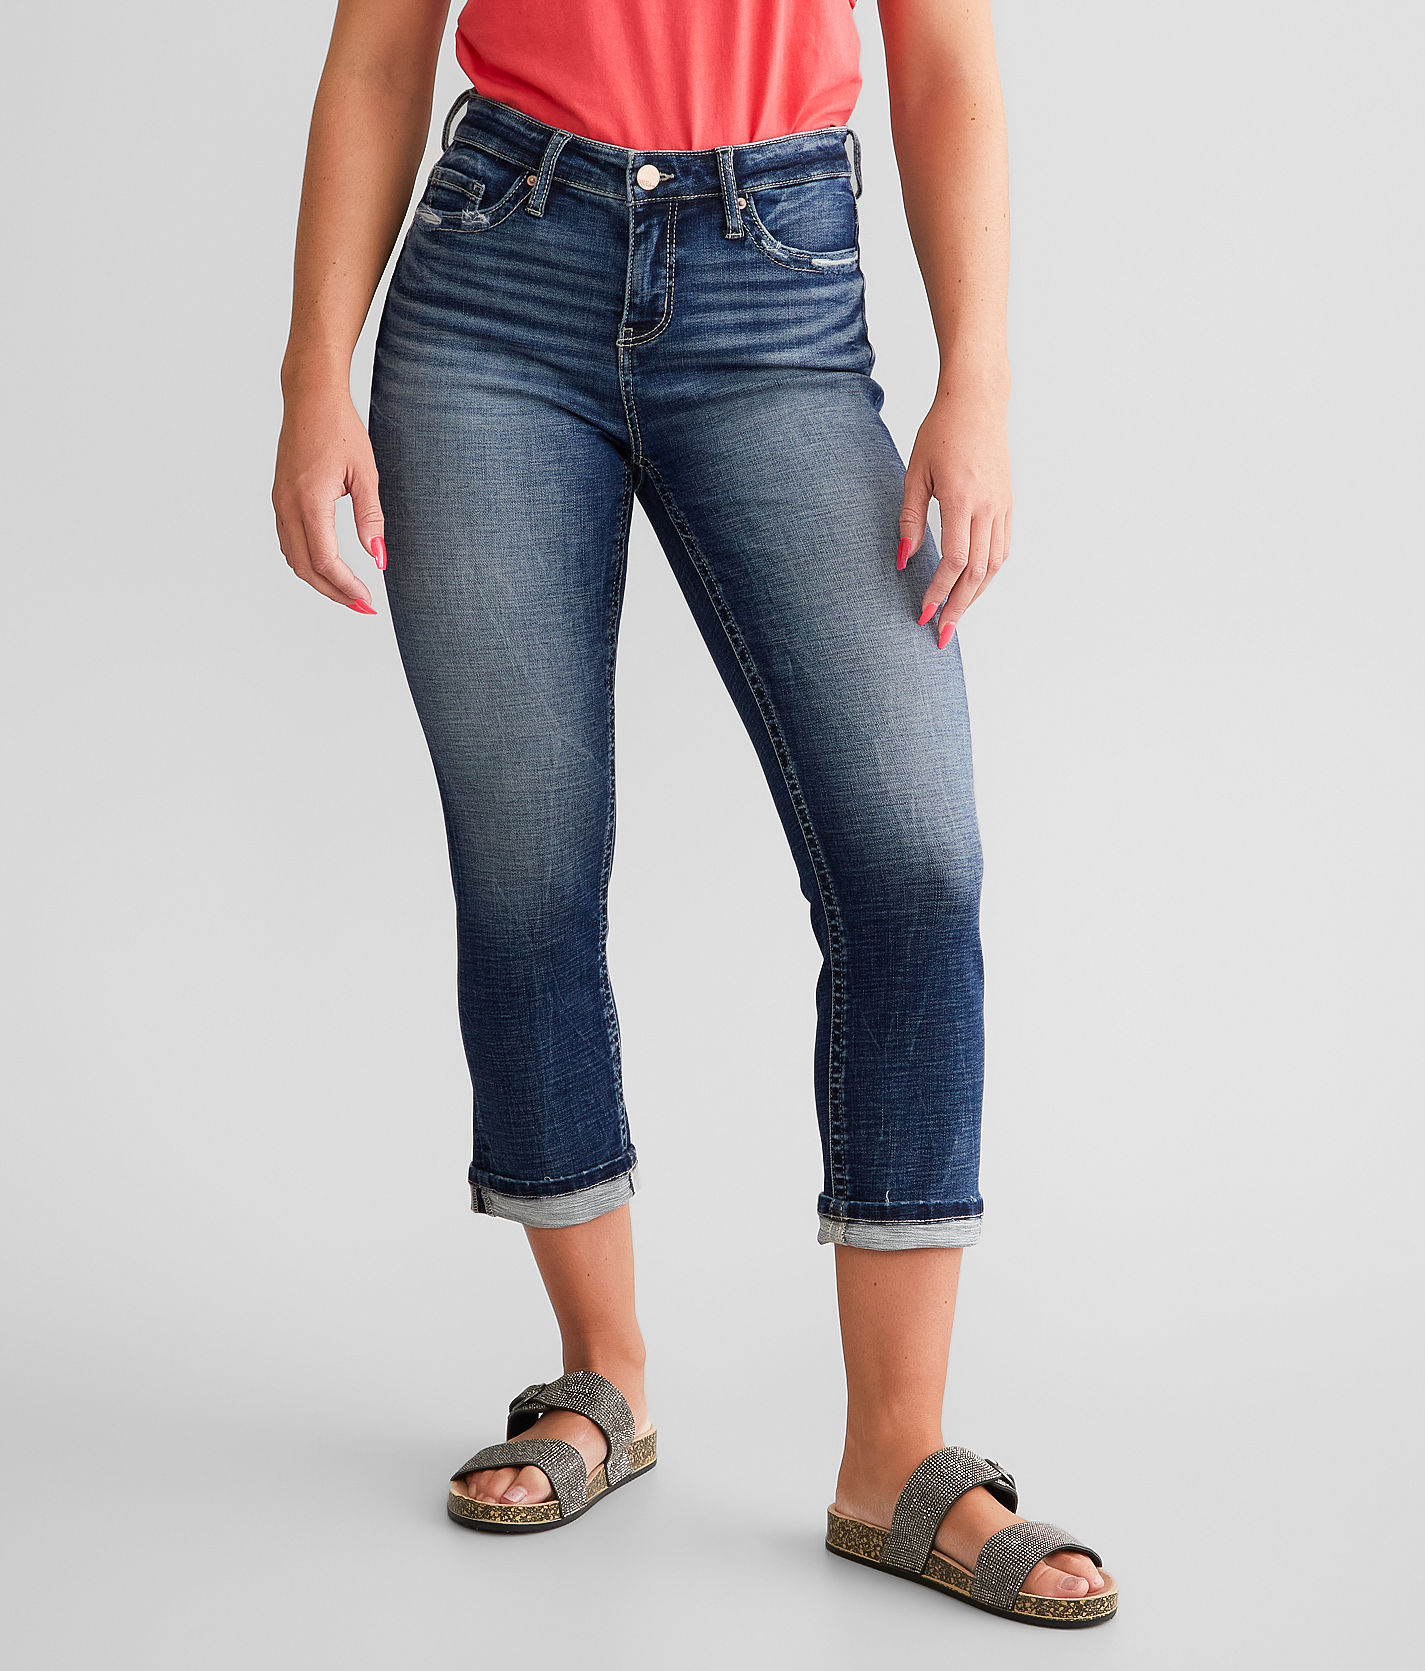 Stretch | Jeans in Buckle Gabby Women\'s - 8 Jean Zimmer Cuffed Capri BKE